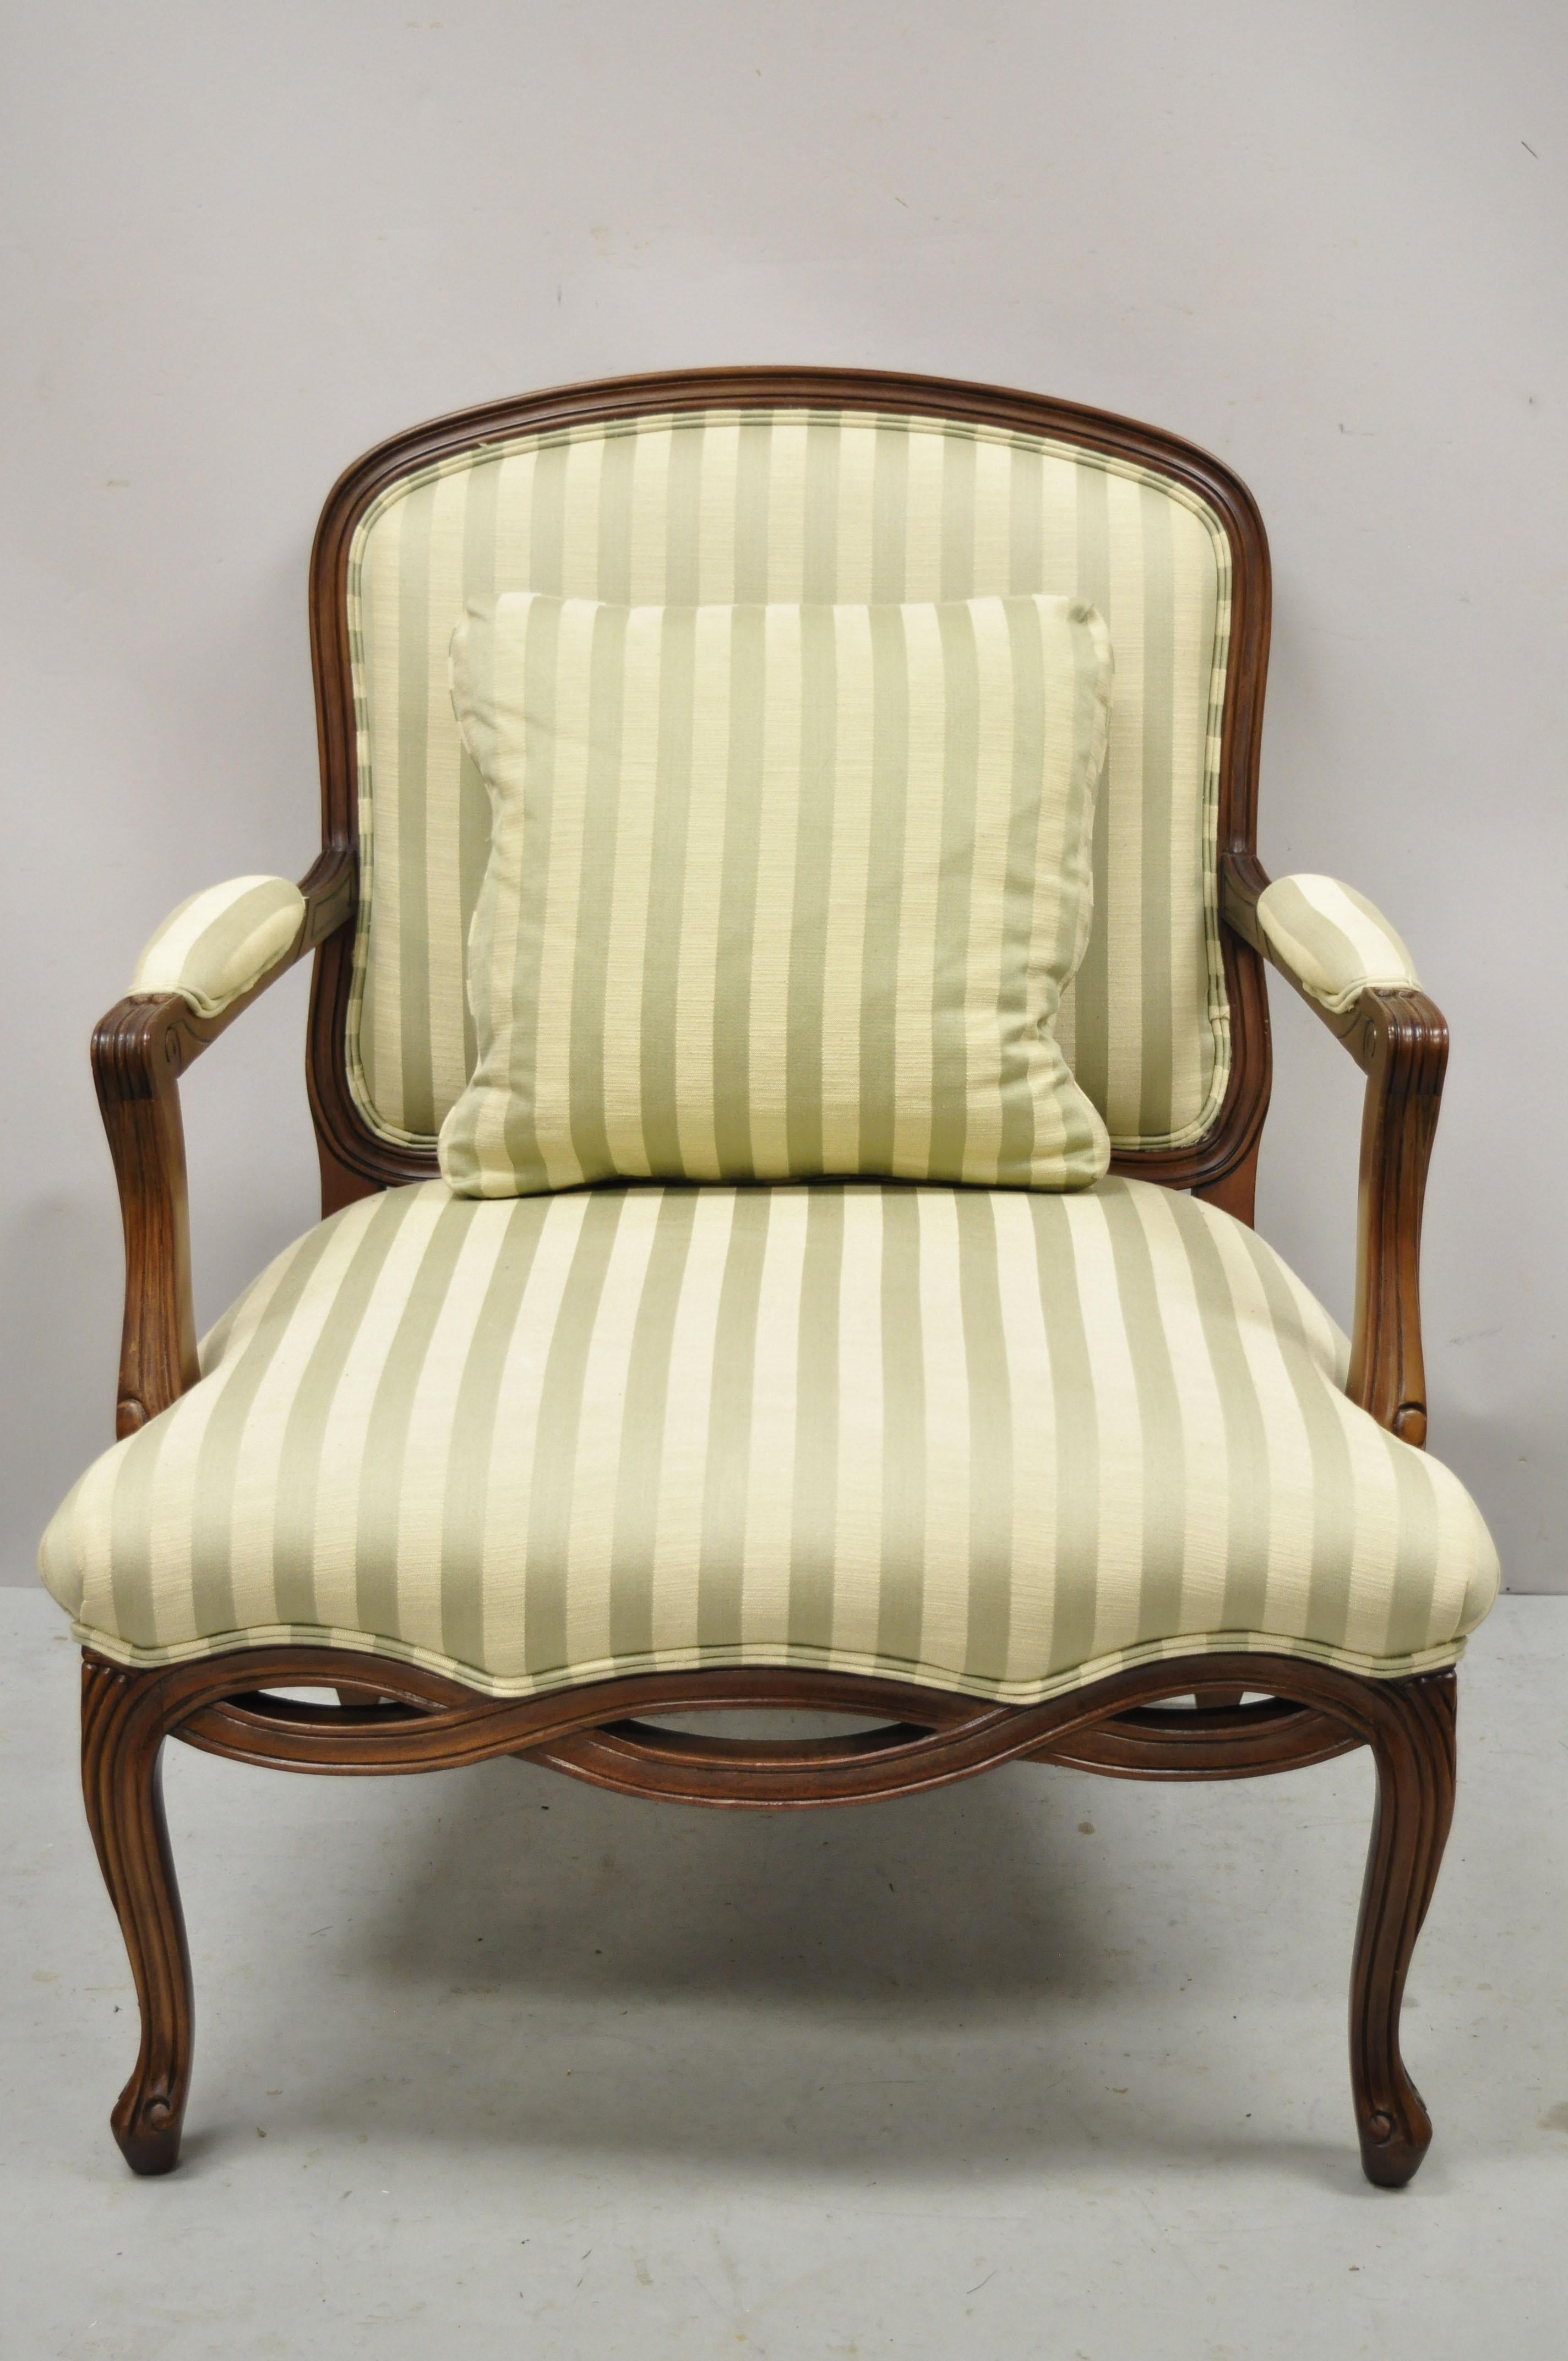 Sherrill Französisch Provincial Louis XV Stil gewebt Rock bergere Lounge-Sessel. Artikel mit grün gestreifter Polsterung, geschnitzter gewebter Rock, sehr schöner Artikel, toller Stil und Form. Abmessungen: 38